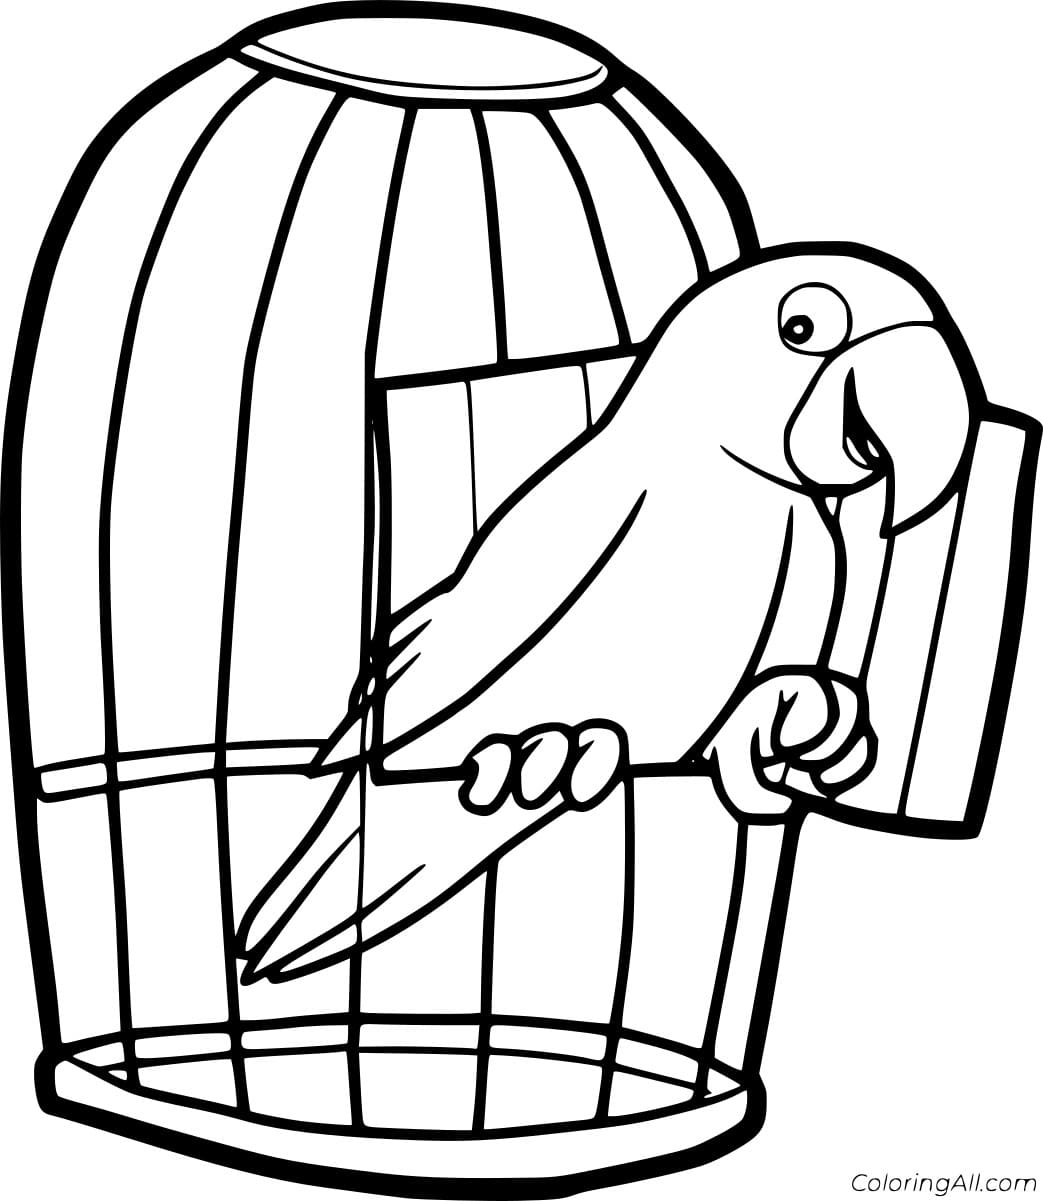 Скачать Клетка Раскраска попугай домашней канарейки - клетка для птиц 0.51 MB | 1024*1448